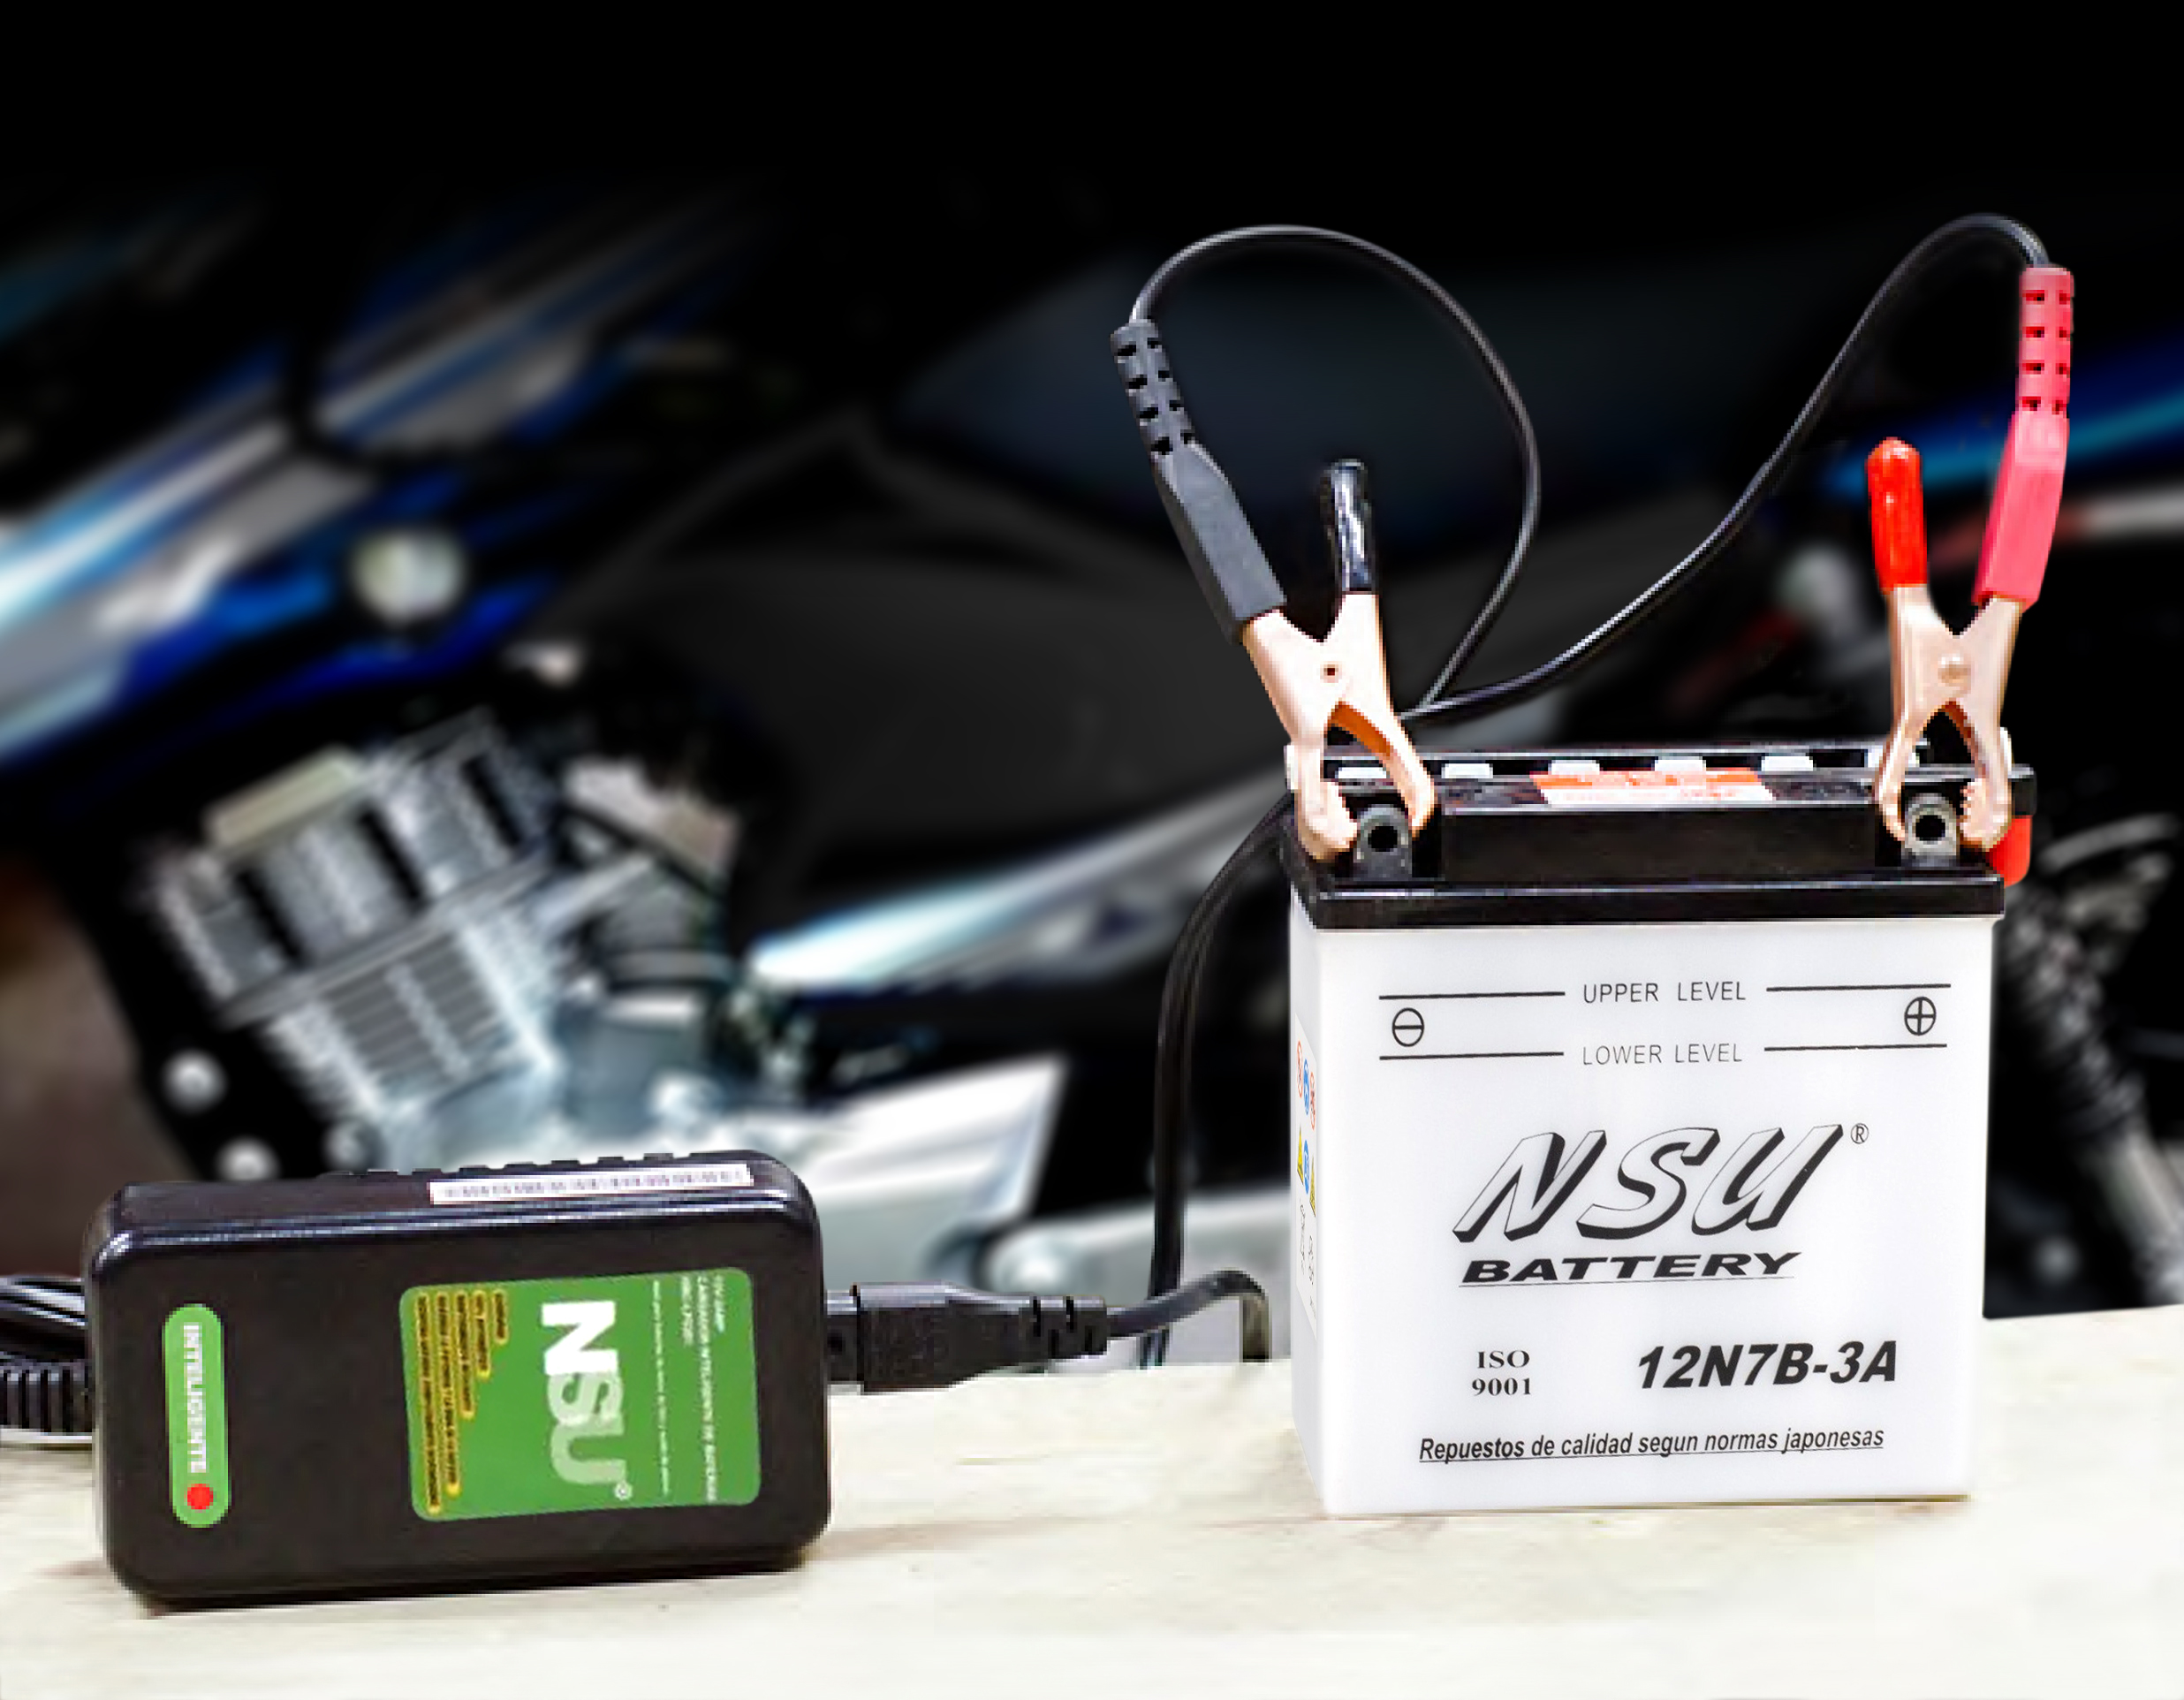 NSU: carga inteligente para la batería de la moto - Exclusivo